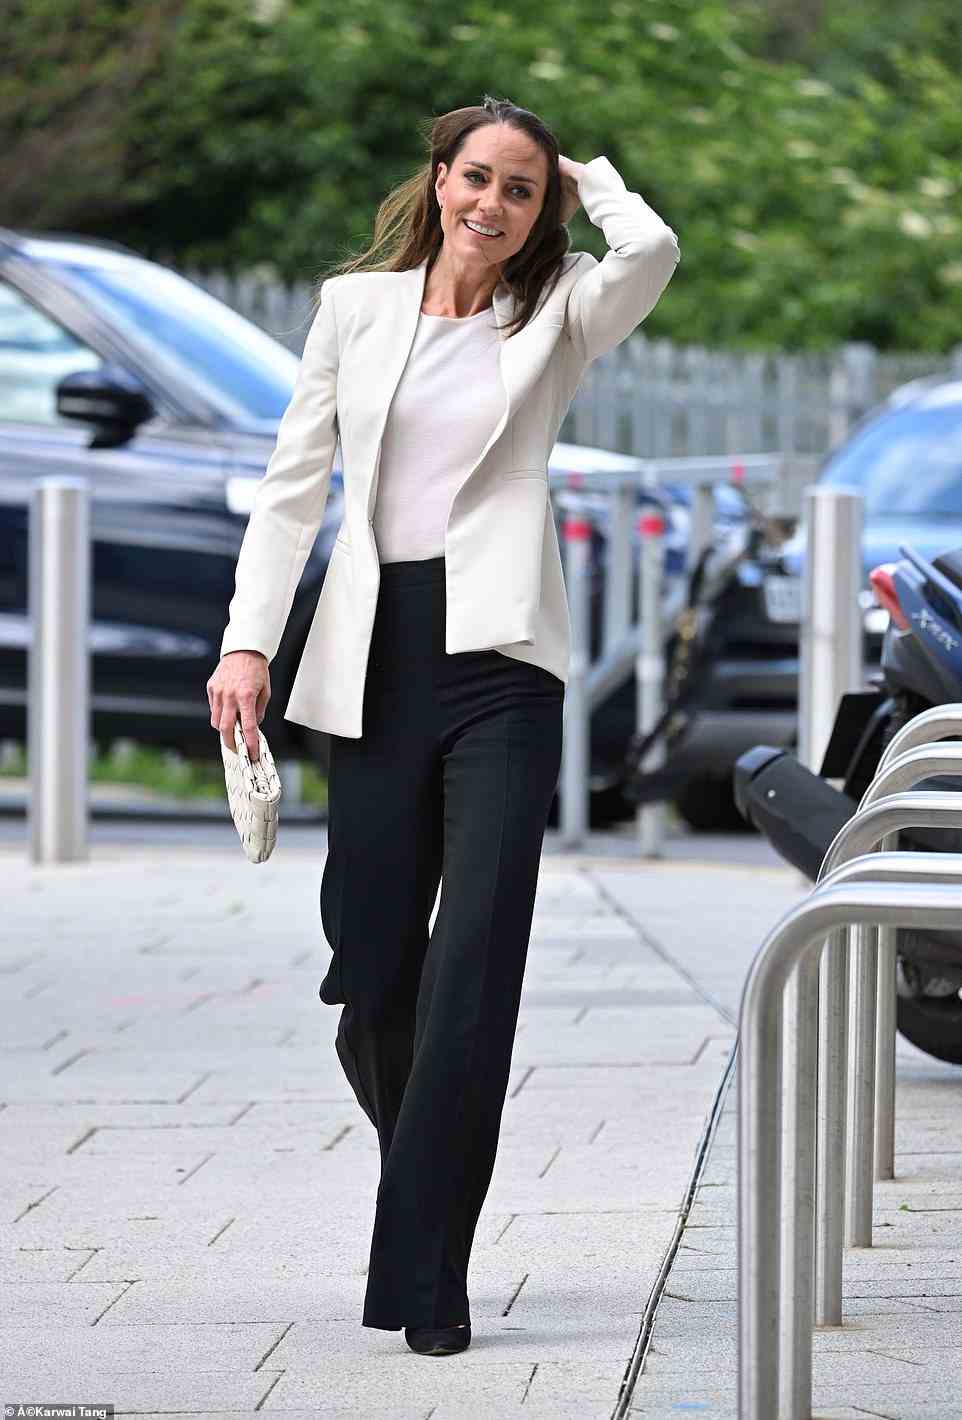 Kate Middleton machte in einem cremefarbenen Blazer und einer schwarzen Hose eine glänzende Figur, als sie bei ihrem ersten Ausflug nach einem geschäftigen Platinum Jubilee-Wochenende eine Wohltätigkeitsorganisation für Kinder in London besuchte